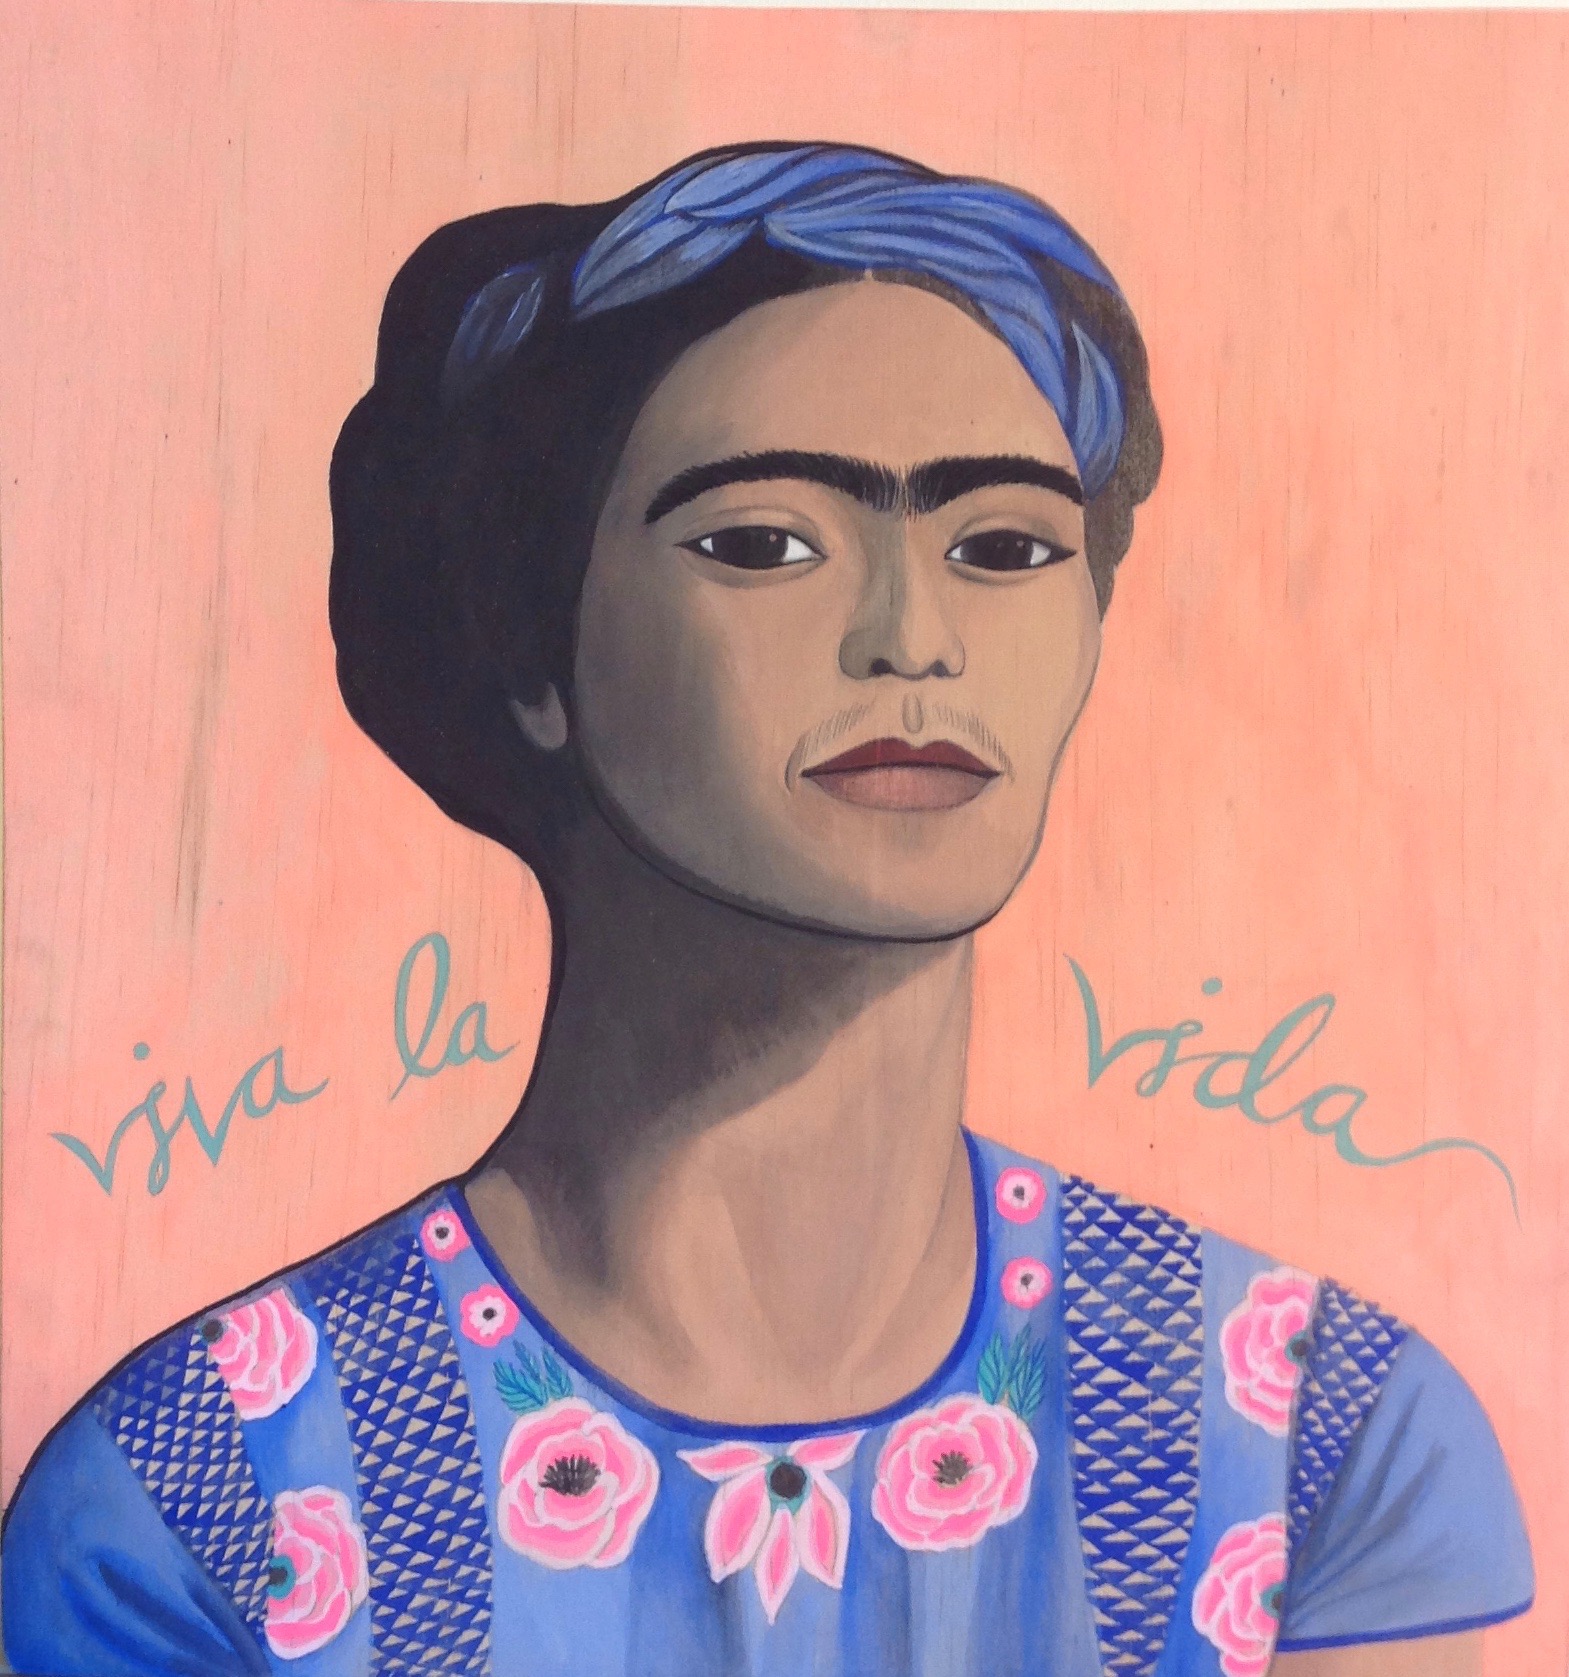 Frida Kahlo viva la vida, 2015